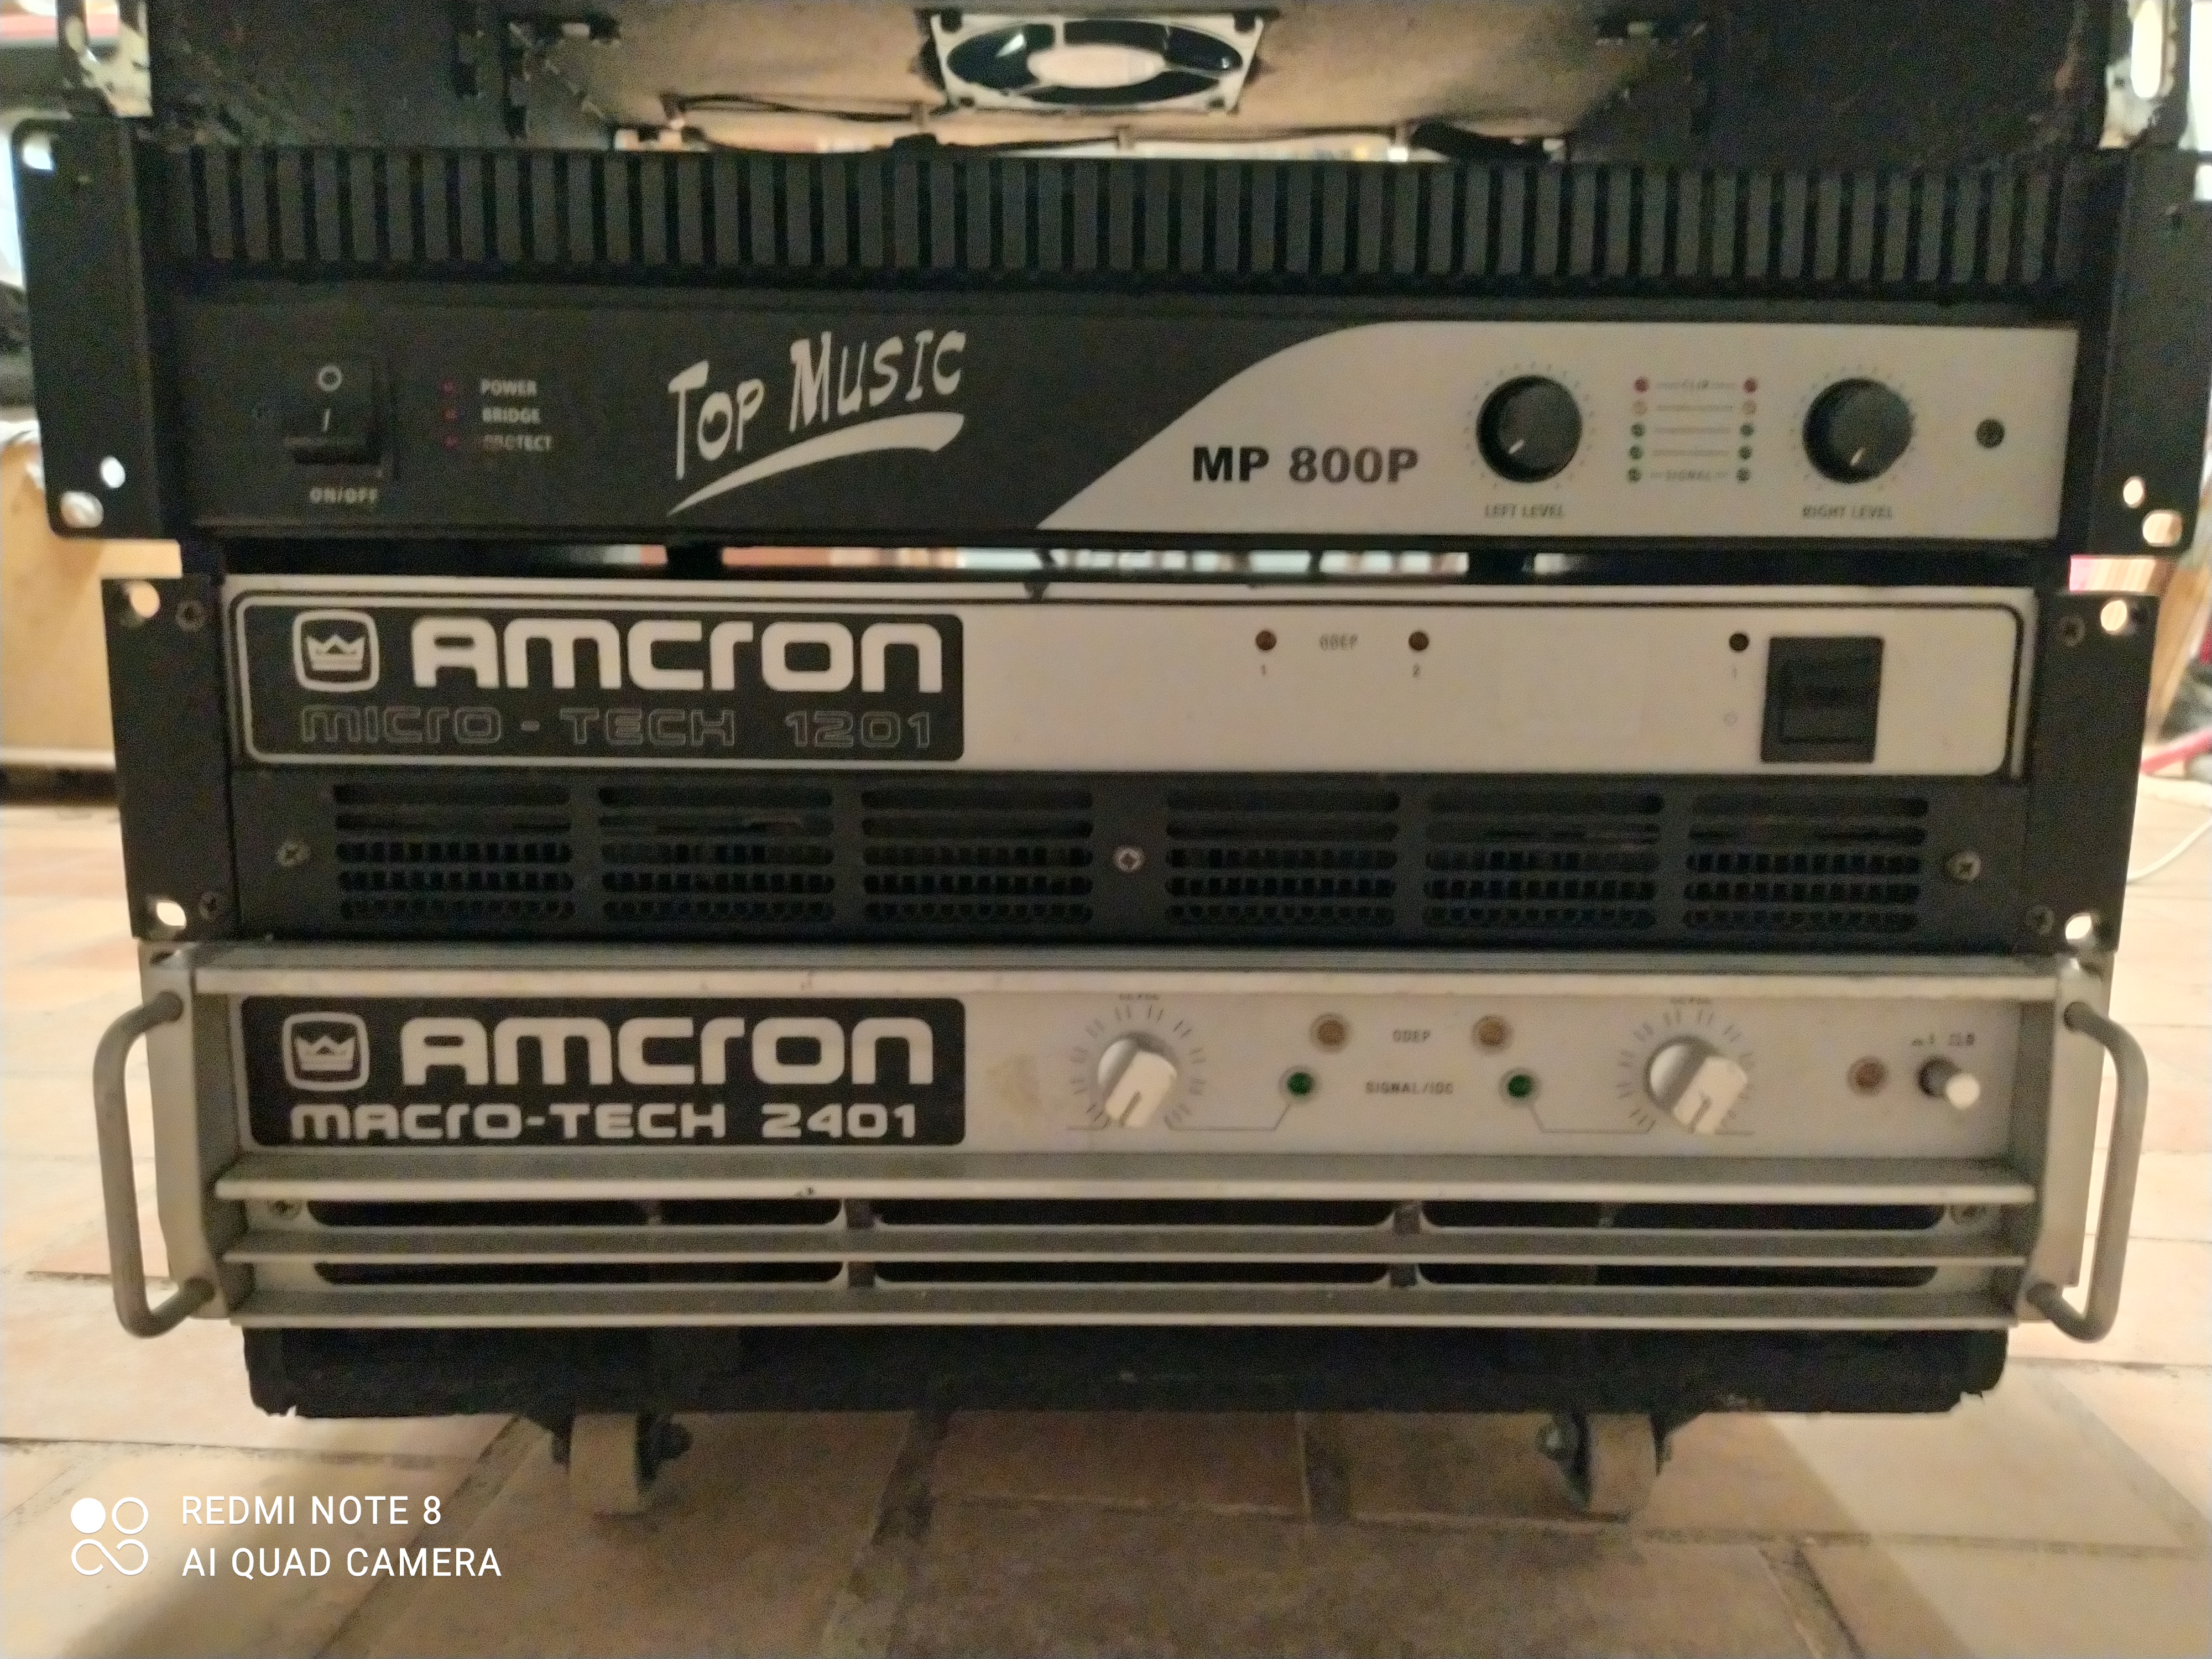 Macro-Tech 2401 - Amcron Macro-Tech 2401 - Audiofanzine